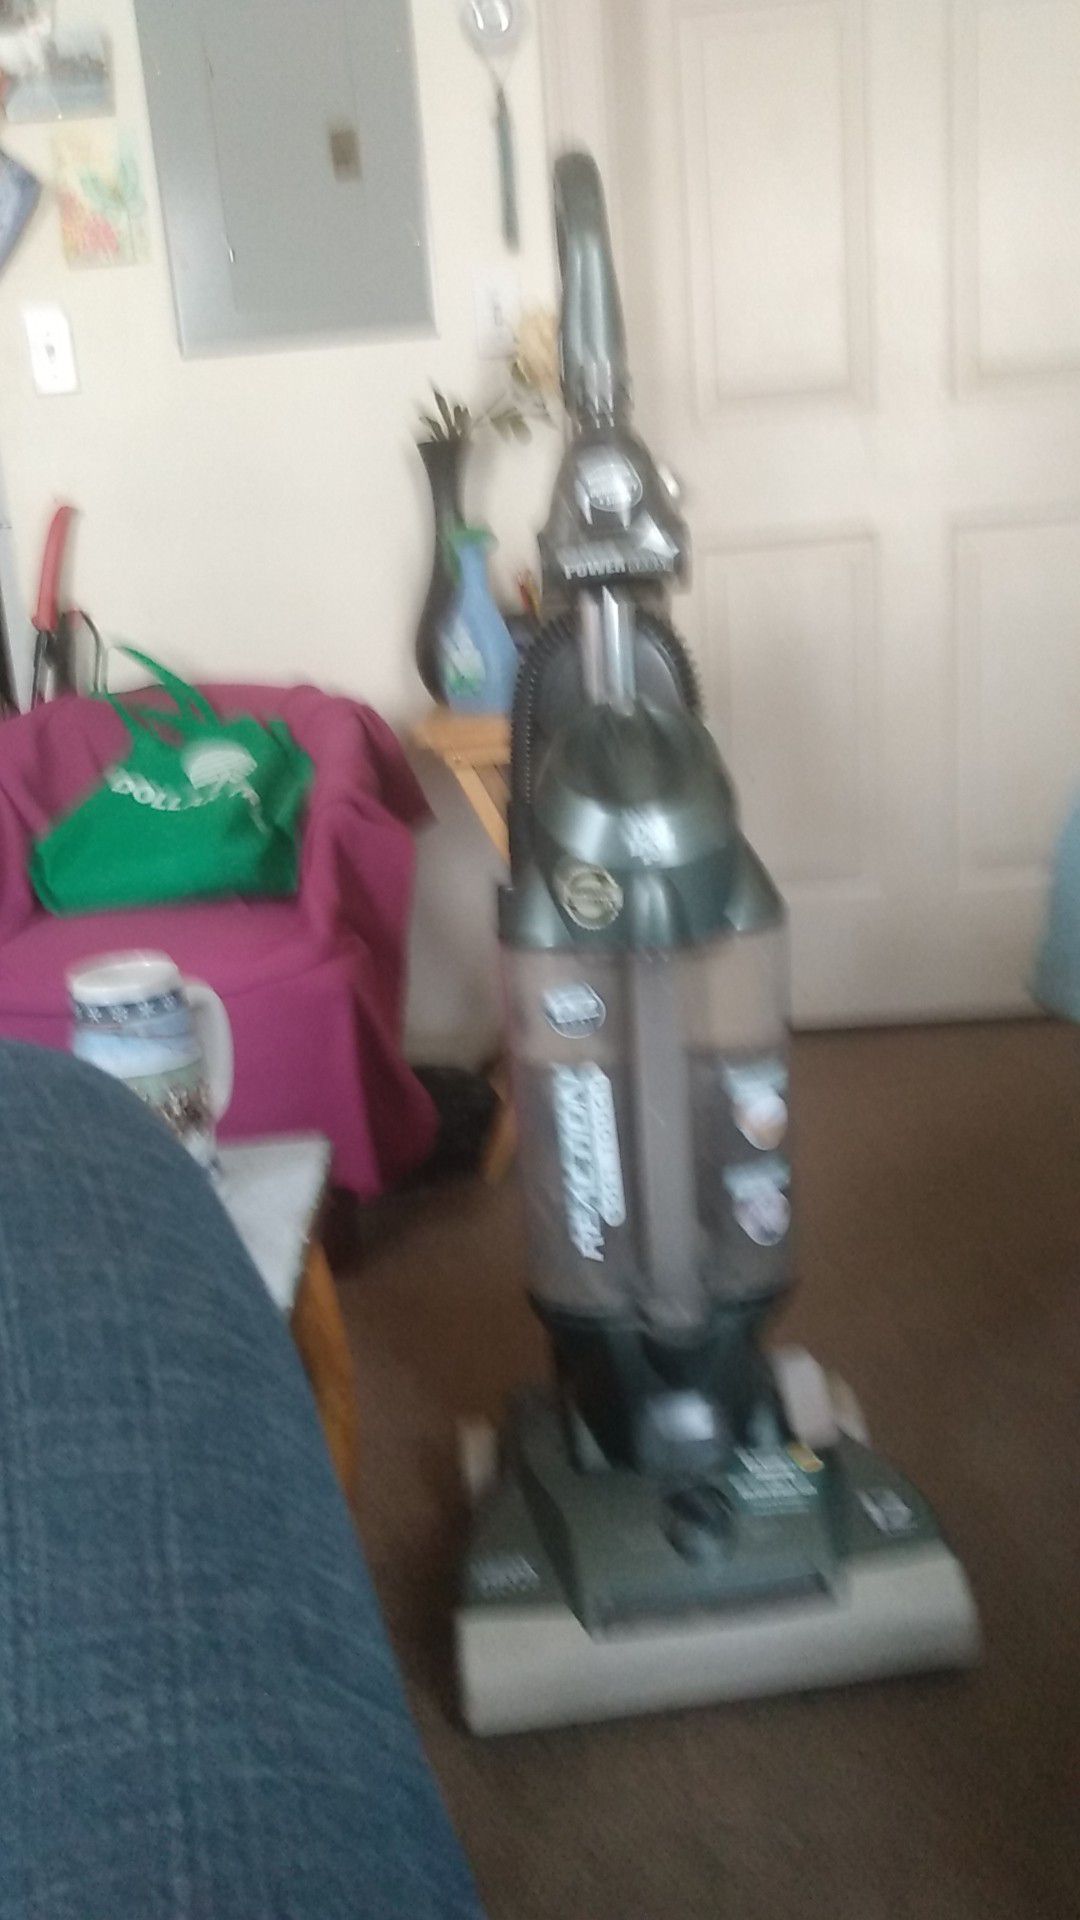 Great vacuum